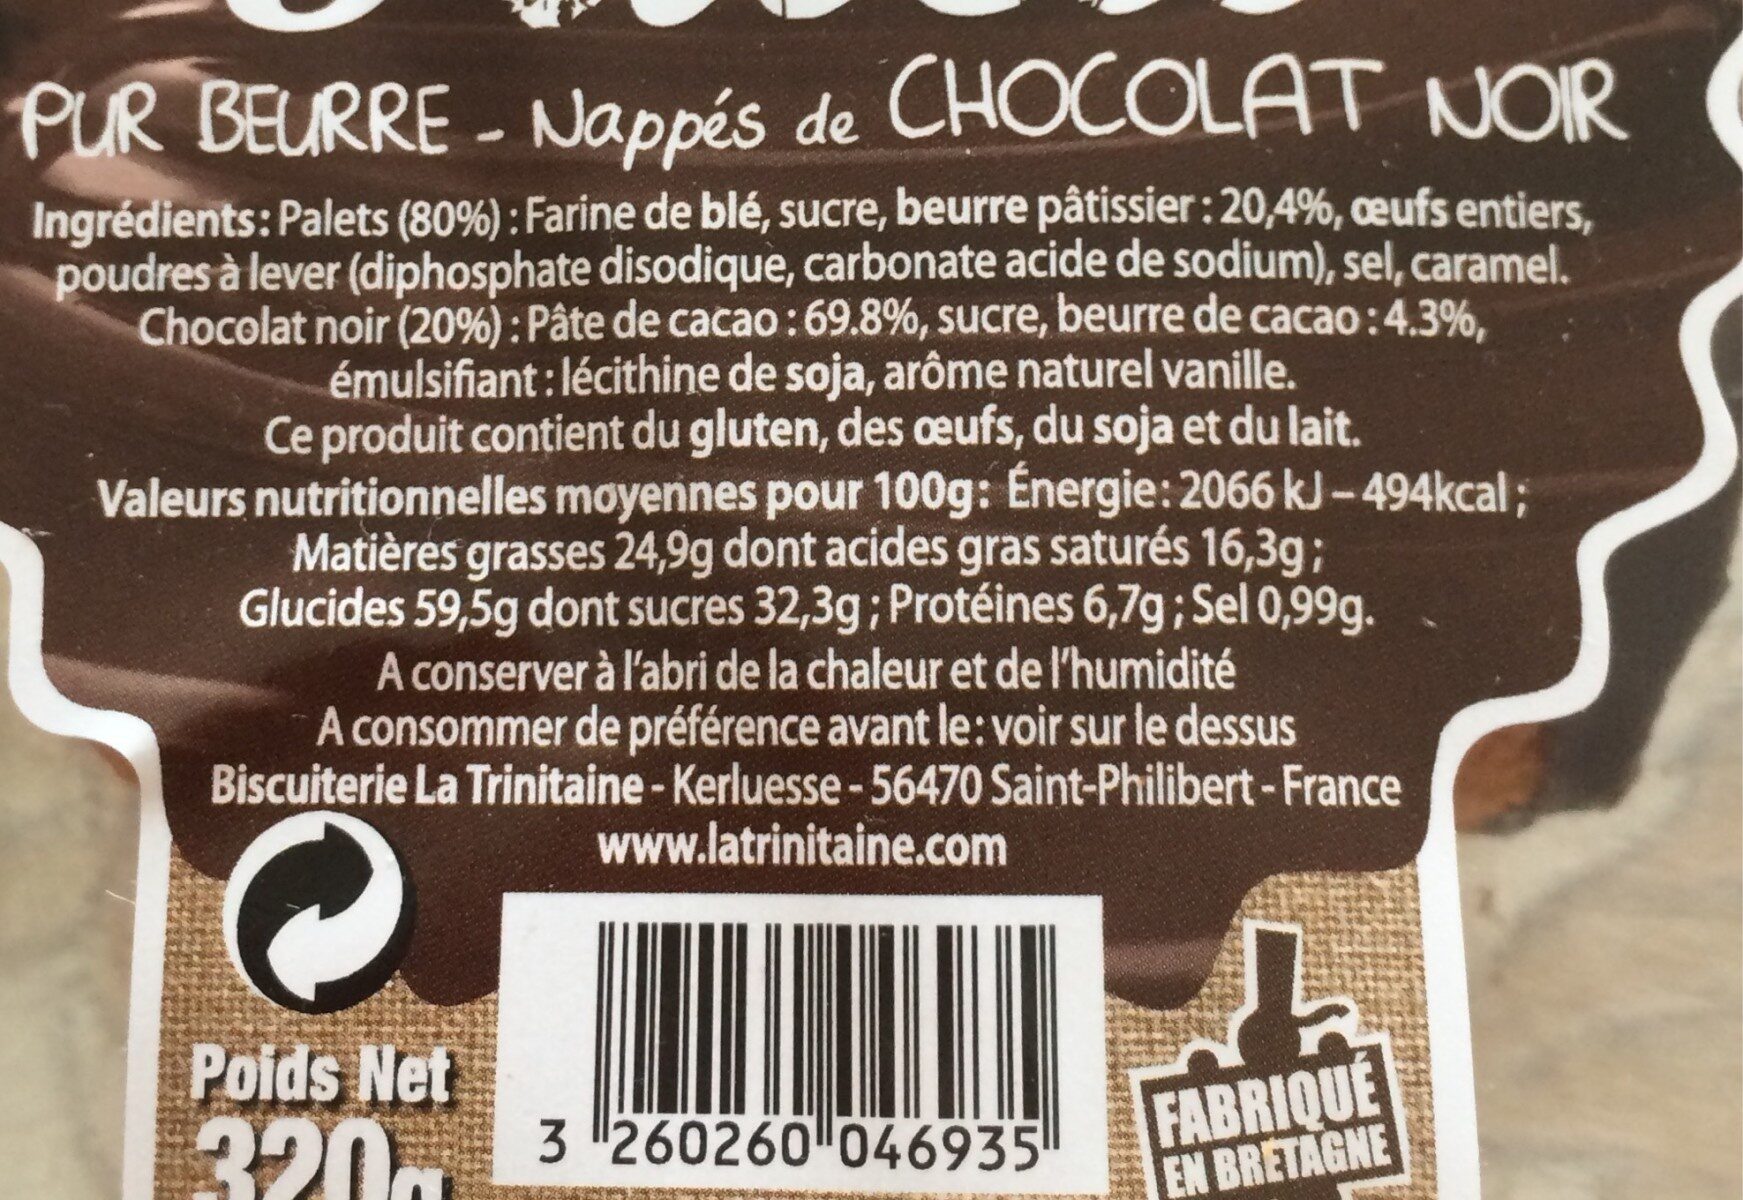 Palets pur beurre nappés de chocolat noir - Tableau nutritionnel